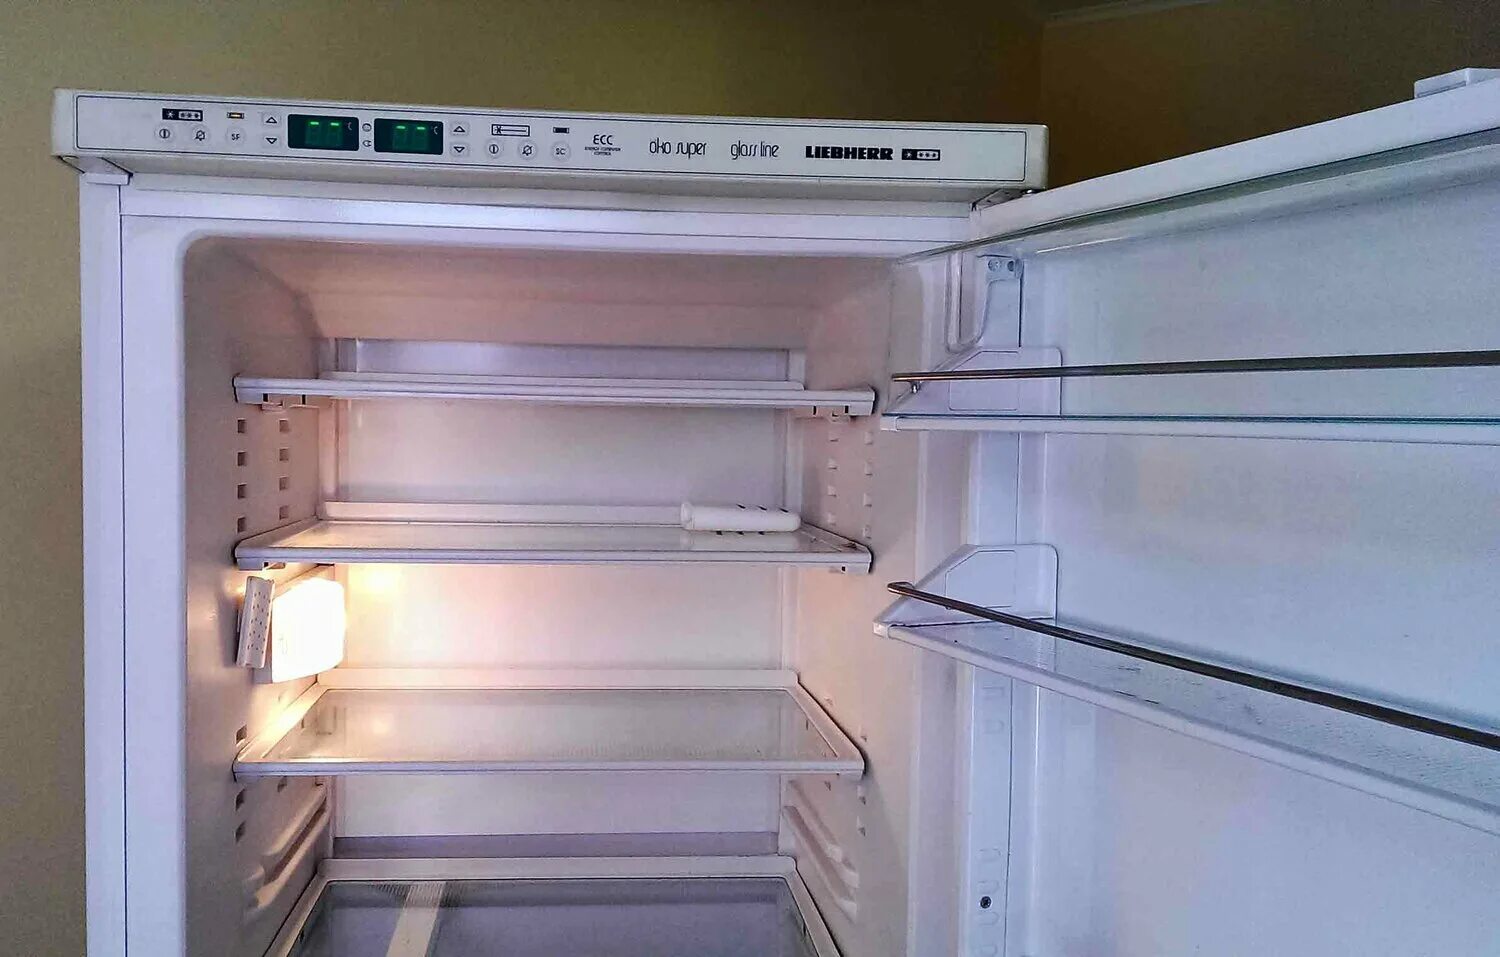 Ремонт либхер в москве на дому холодильников